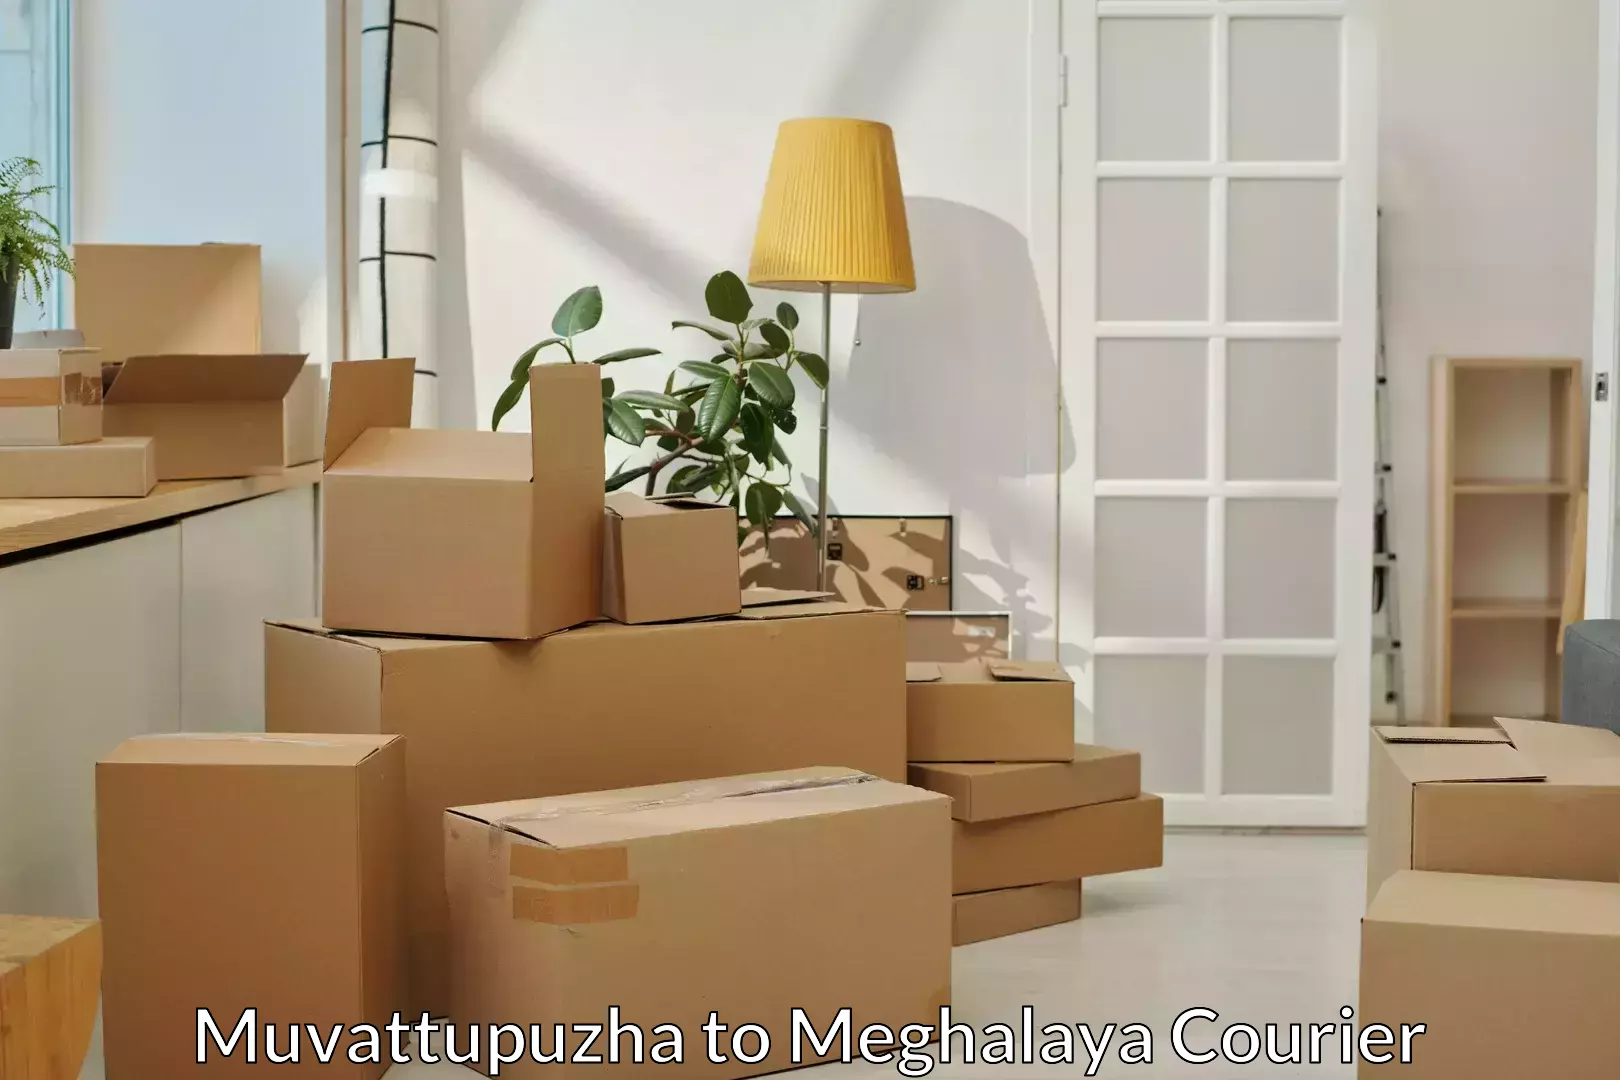 Furniture delivery service Muvattupuzha to Tura